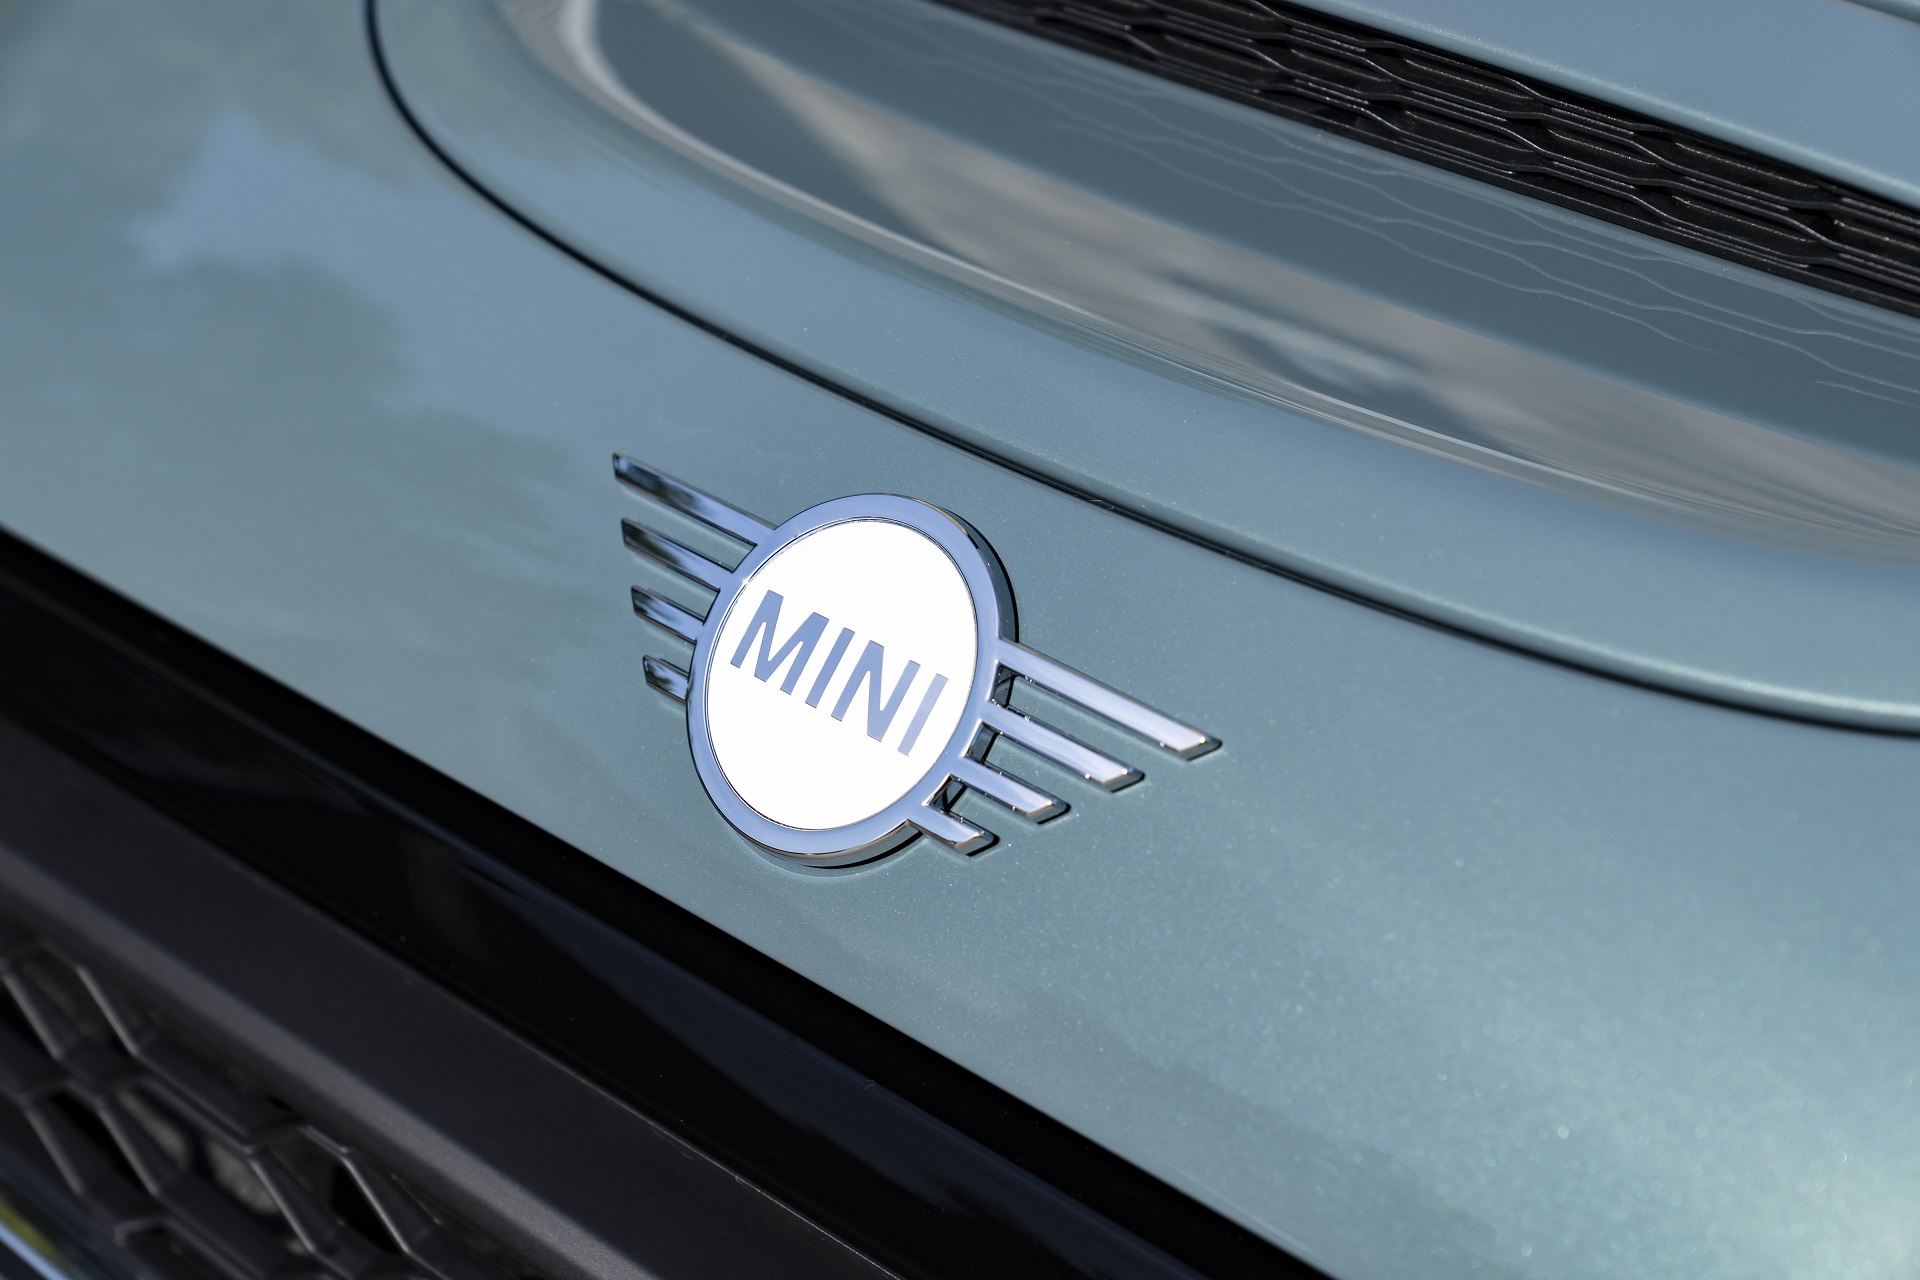 2023 MINI Cooper S 3-door Multitone Edition Badge Wallpapers #51 of 72